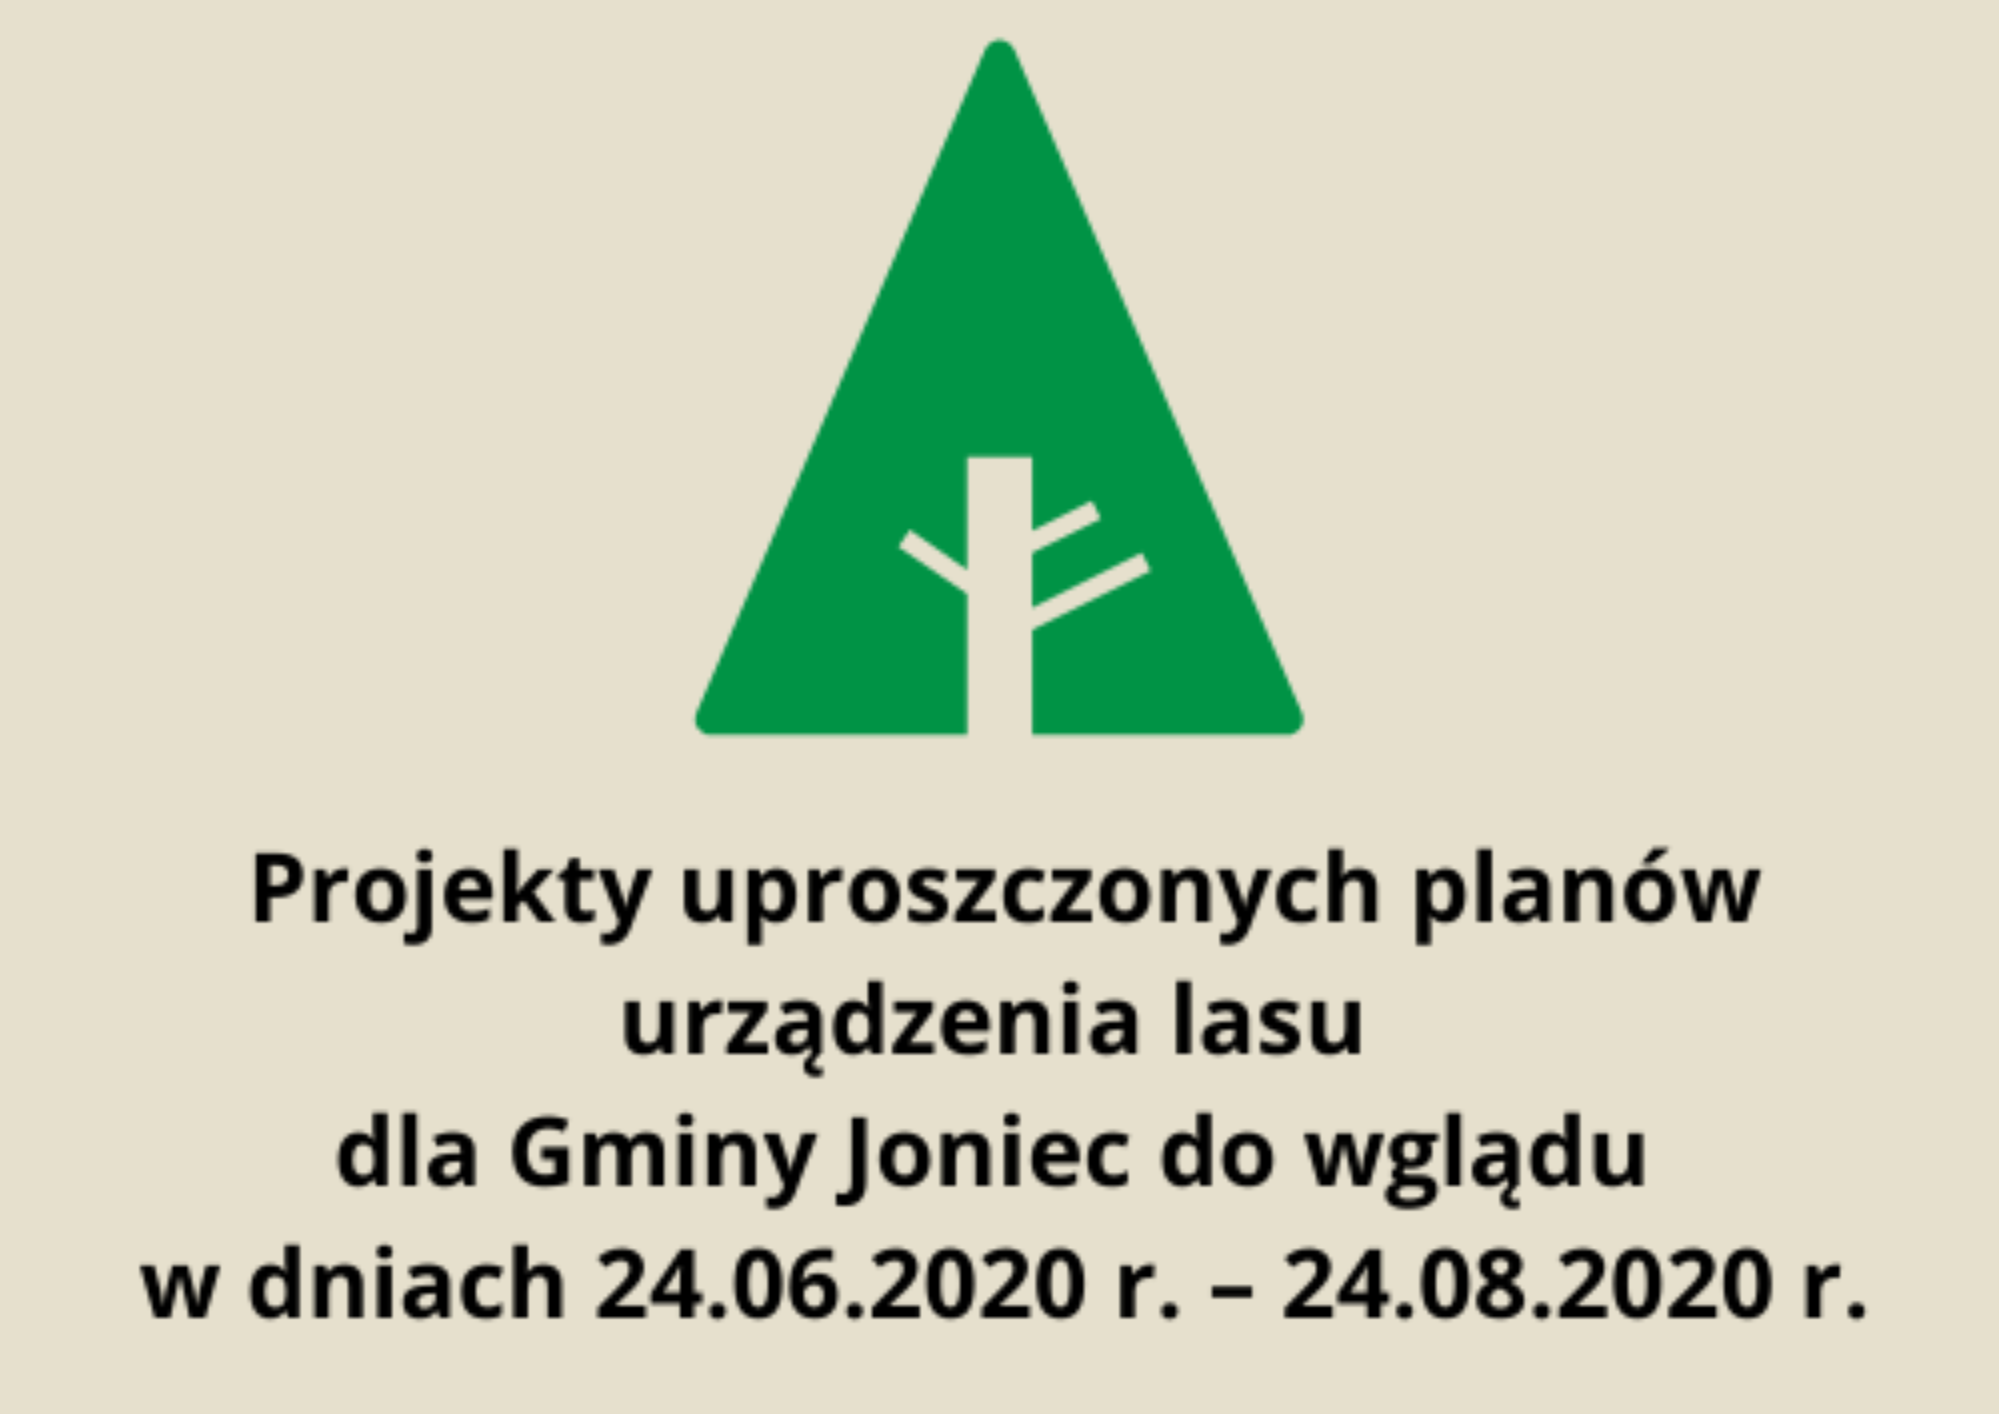 plakat do projektów uproszczonych planów urządzenia lasu